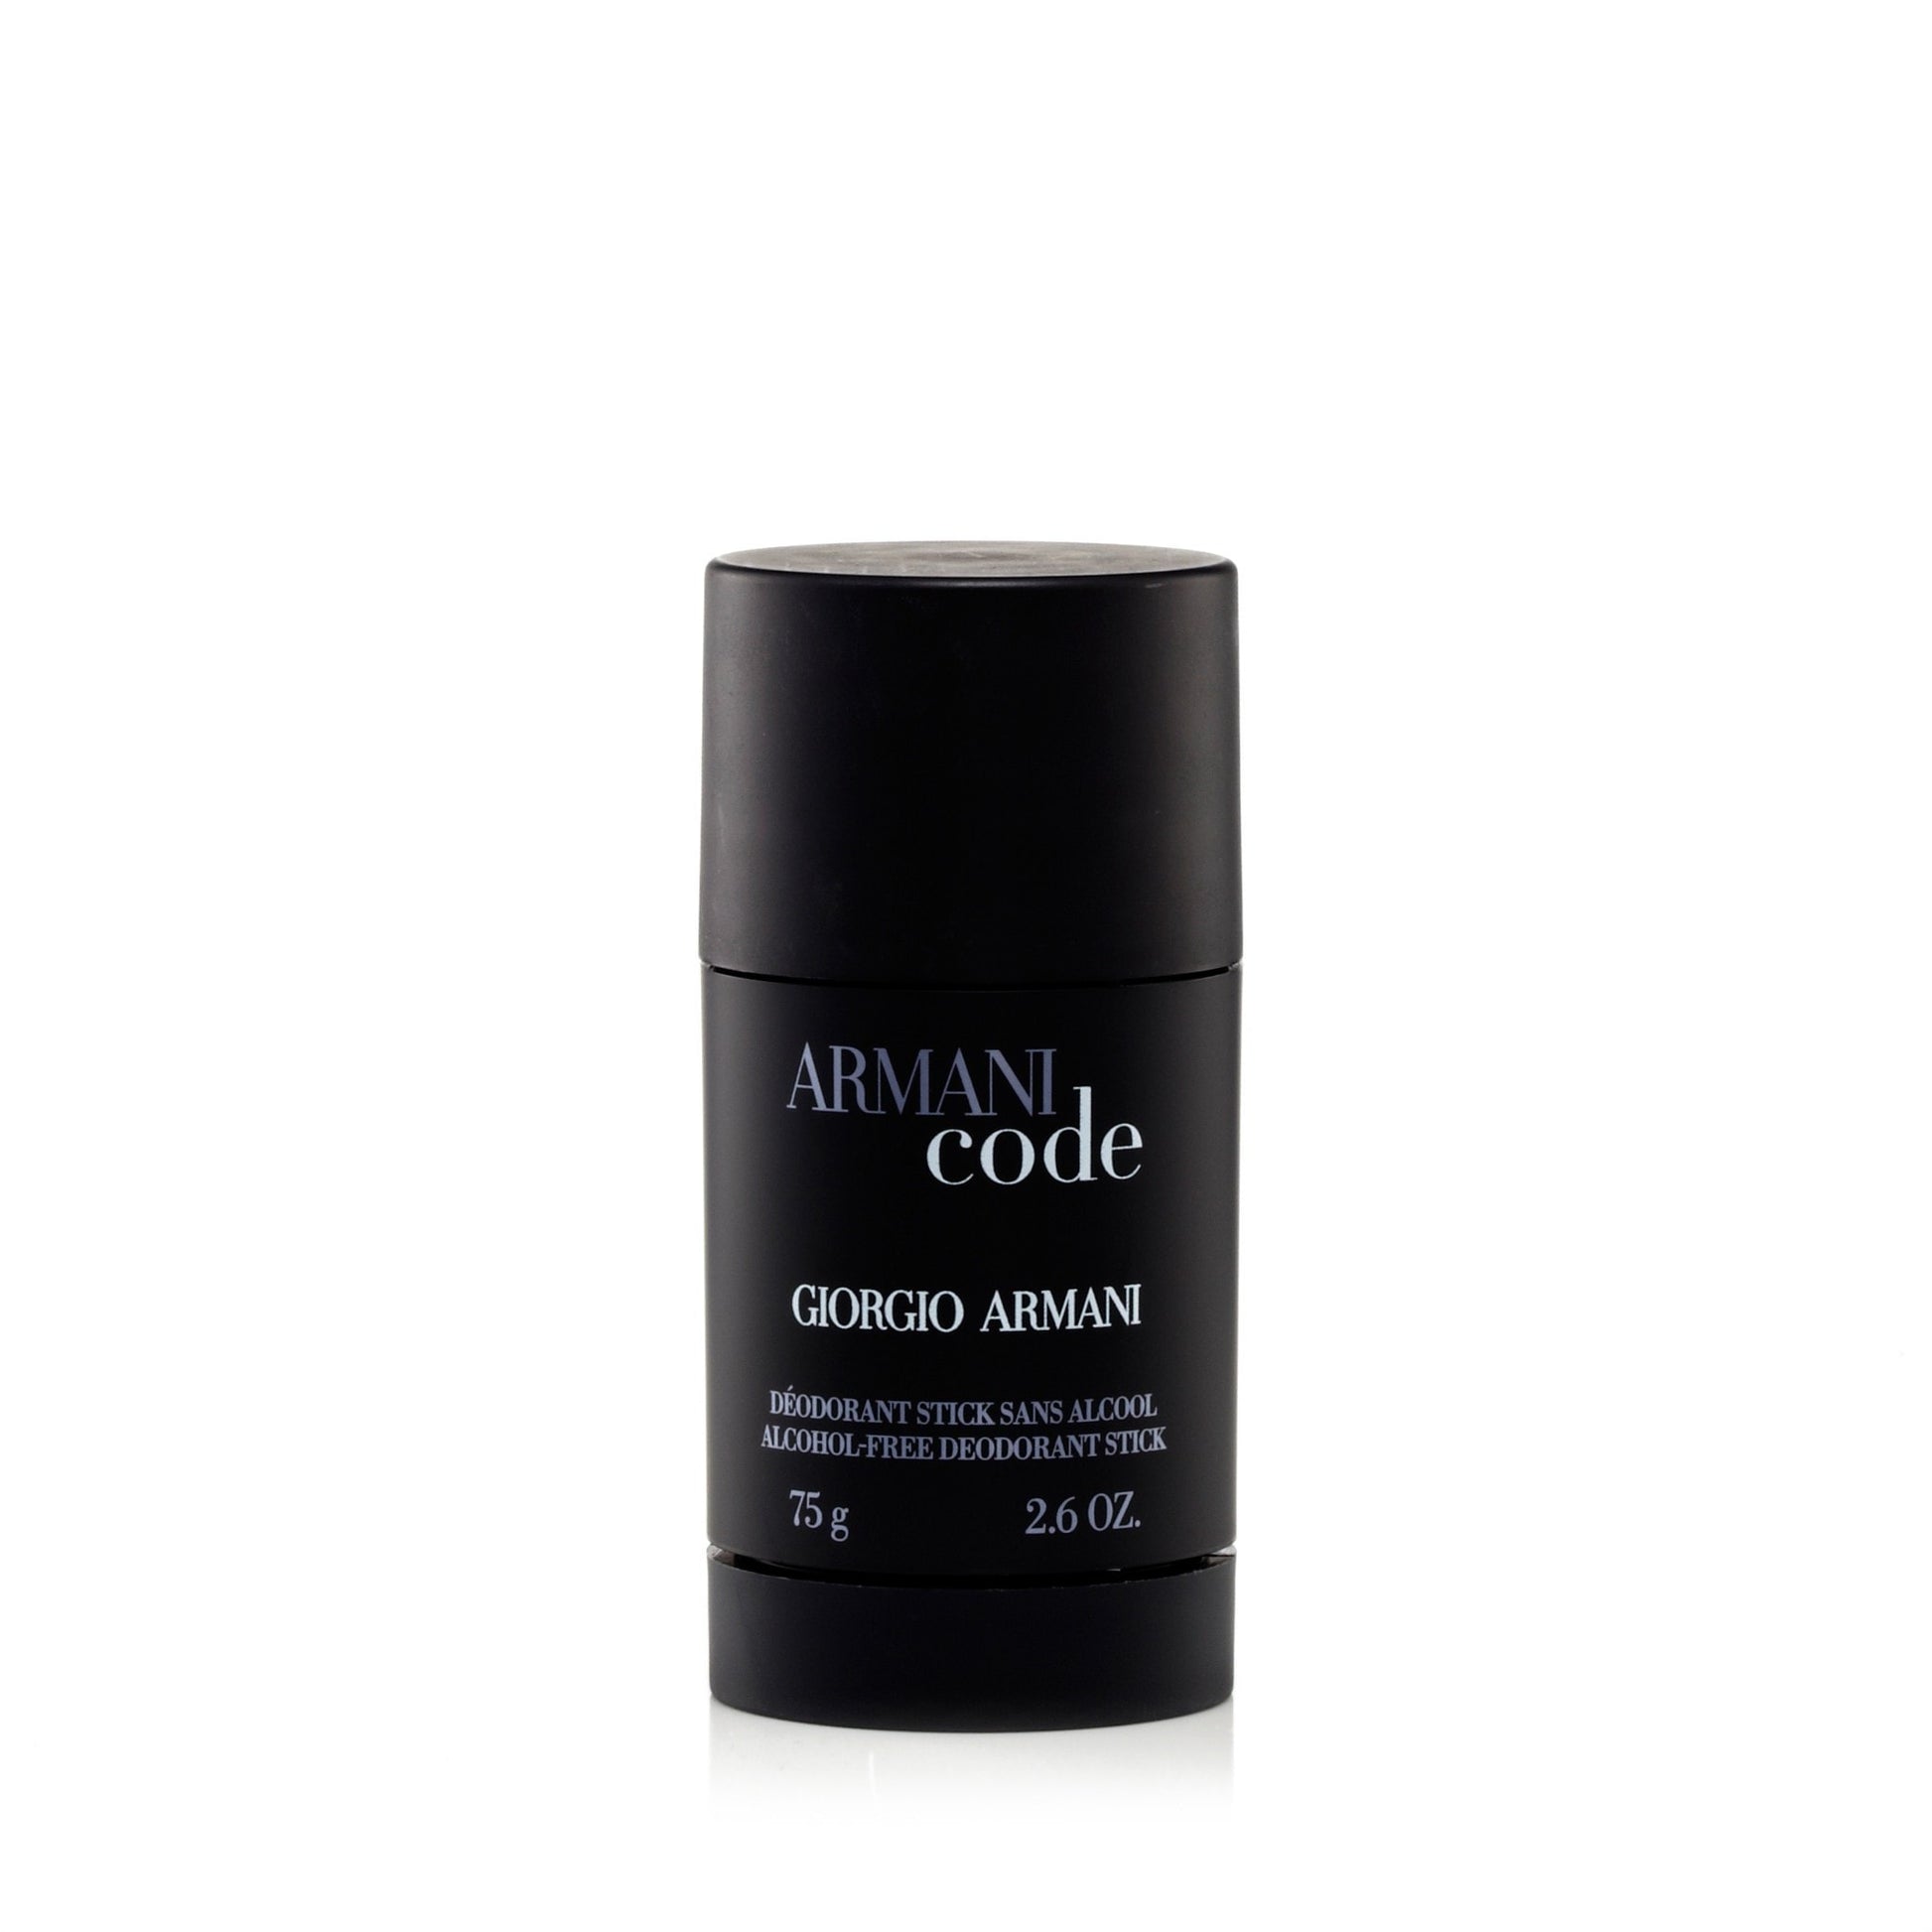 Armani Code Deodorant for Men by Giorgio Armani 2.6 oz. Click to open in modal